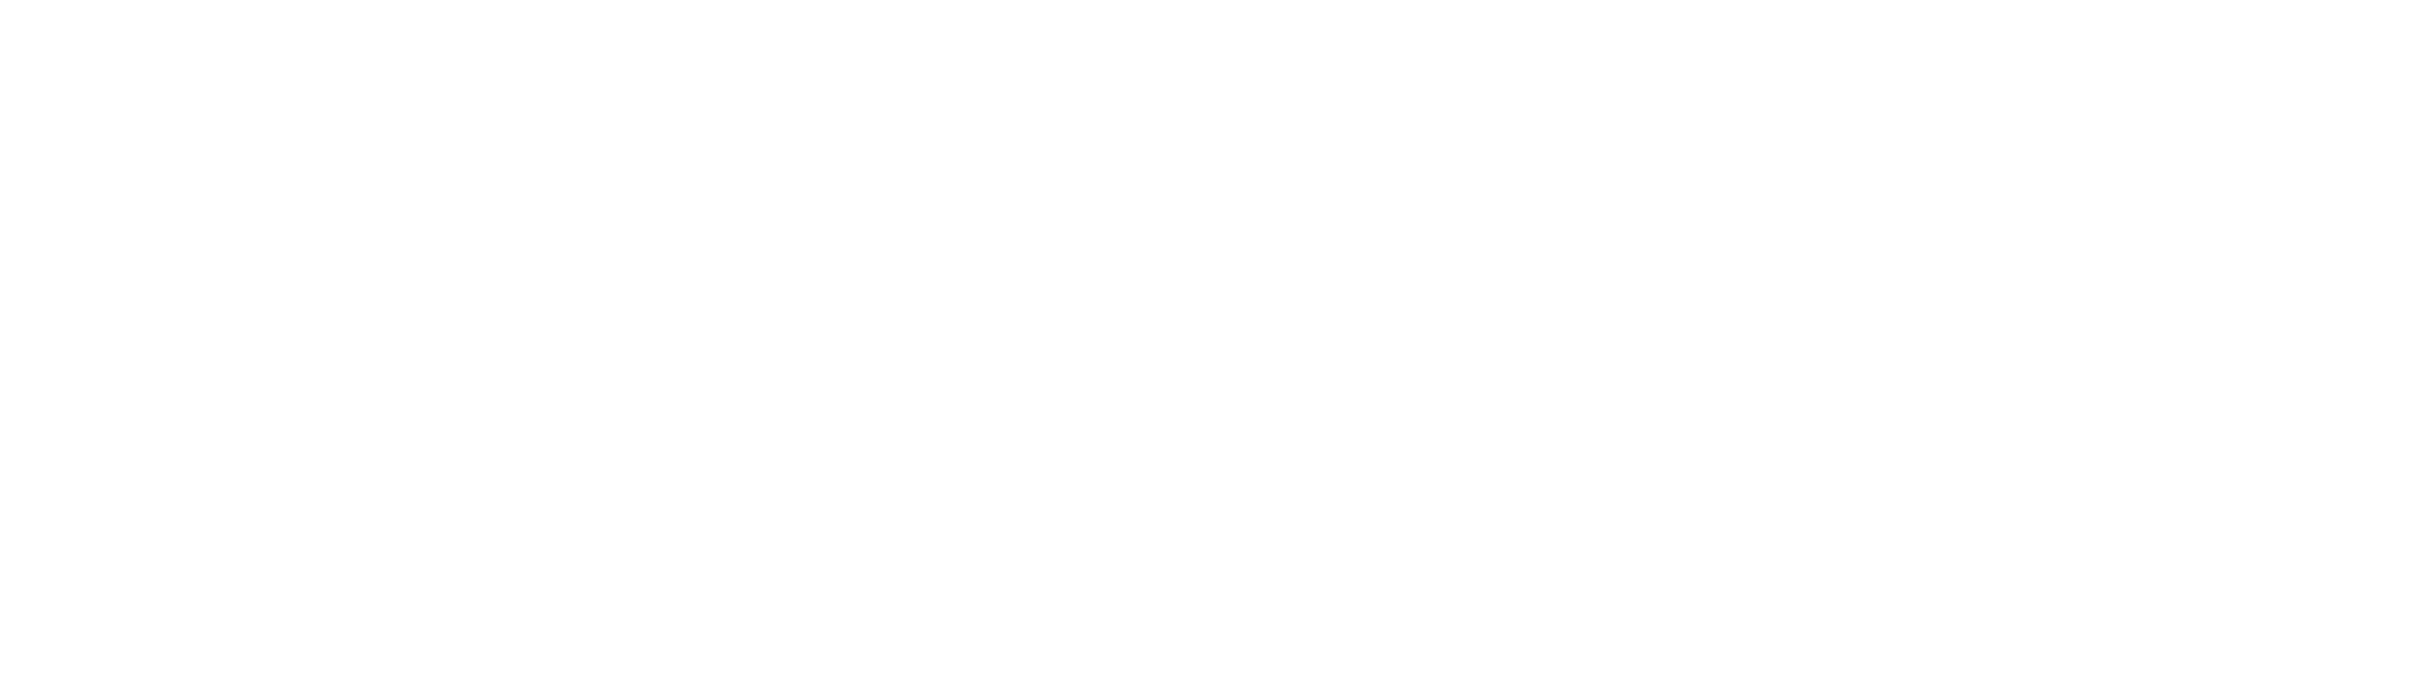 RVU logo white